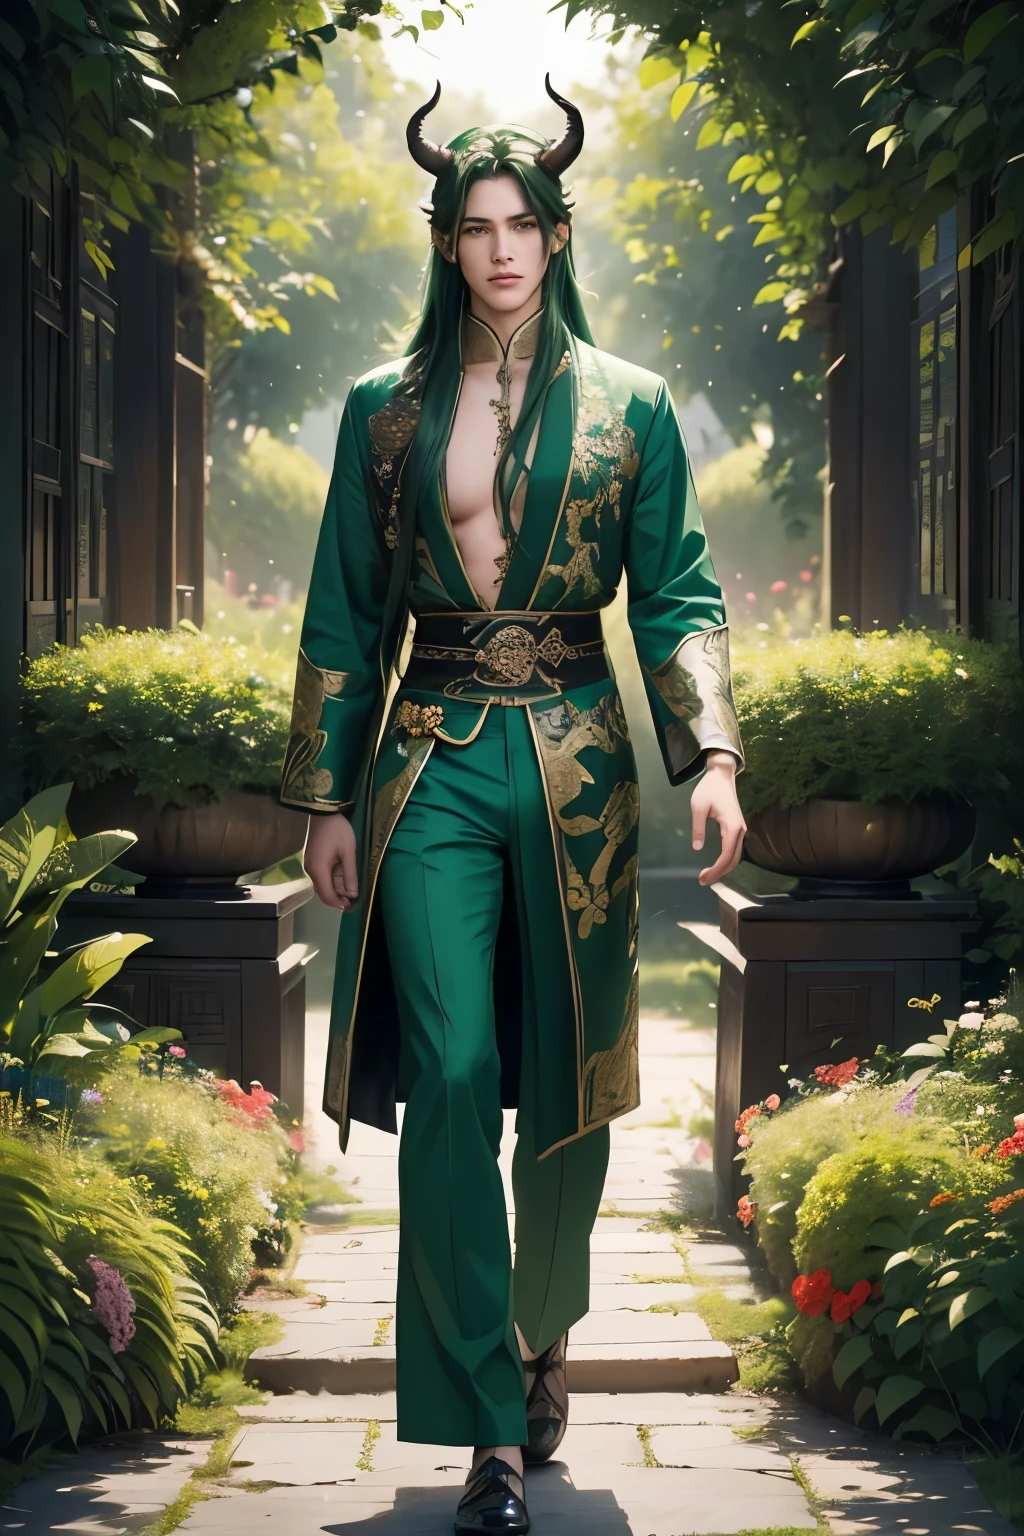 ((Лучшее качество)), ((шедевр)), (подробный), ((идеальное лицо)), ((Полутела)) идеальные пропорции, Он красивый мужчина с длинными зелеными волосами., Ему 18 лет, у него есть рога, он носит китайскую одежду с открытой грудью, он чувственный, он на фоне цветов, он элегантно гуляет по саду ((идеально сделать)) все тело+